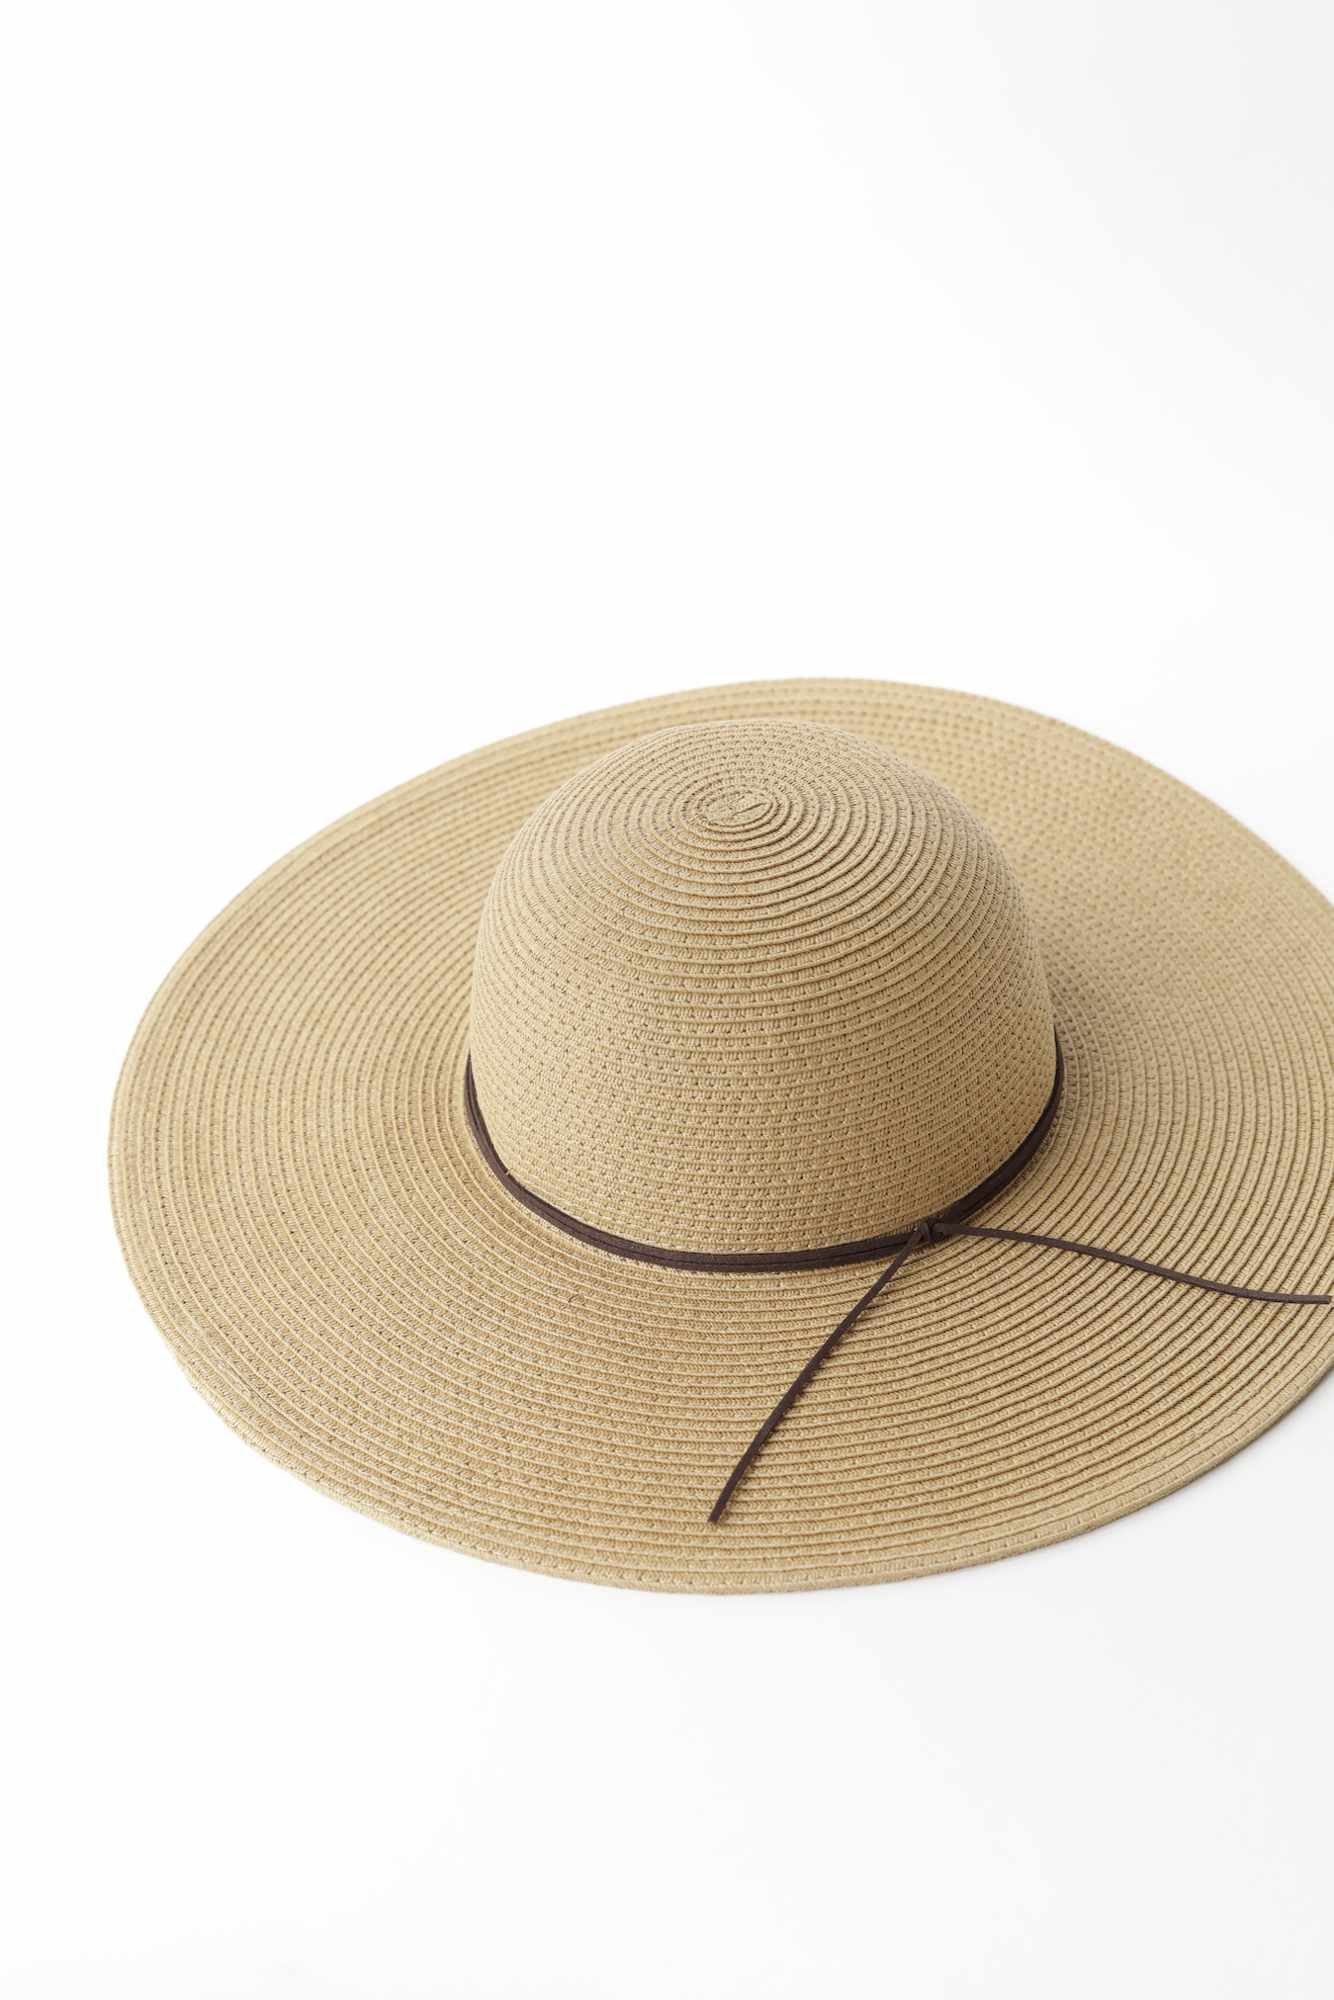 Havana Satin-Lined Straw Hat by Grace Eleyae